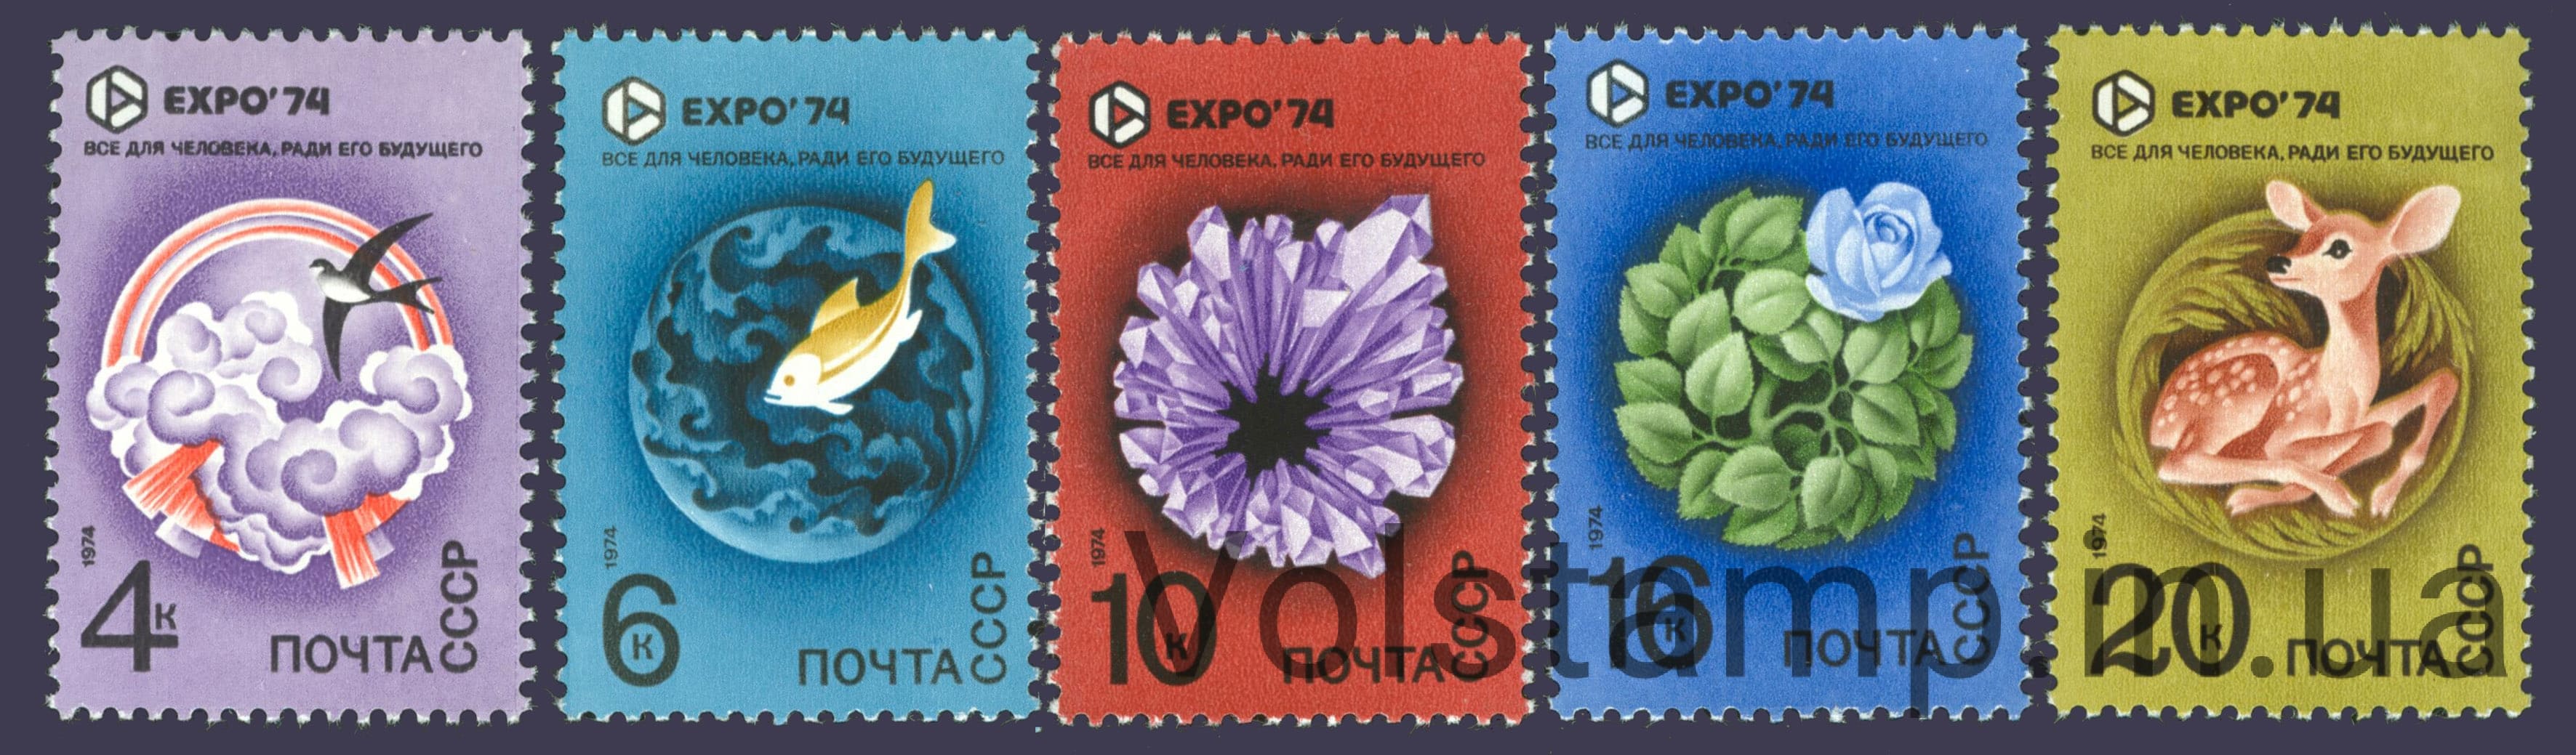 1974 серия марок Всемирная выставка Экспо-74, посвященная защите окружающей среды от загрязнения №4279-4283